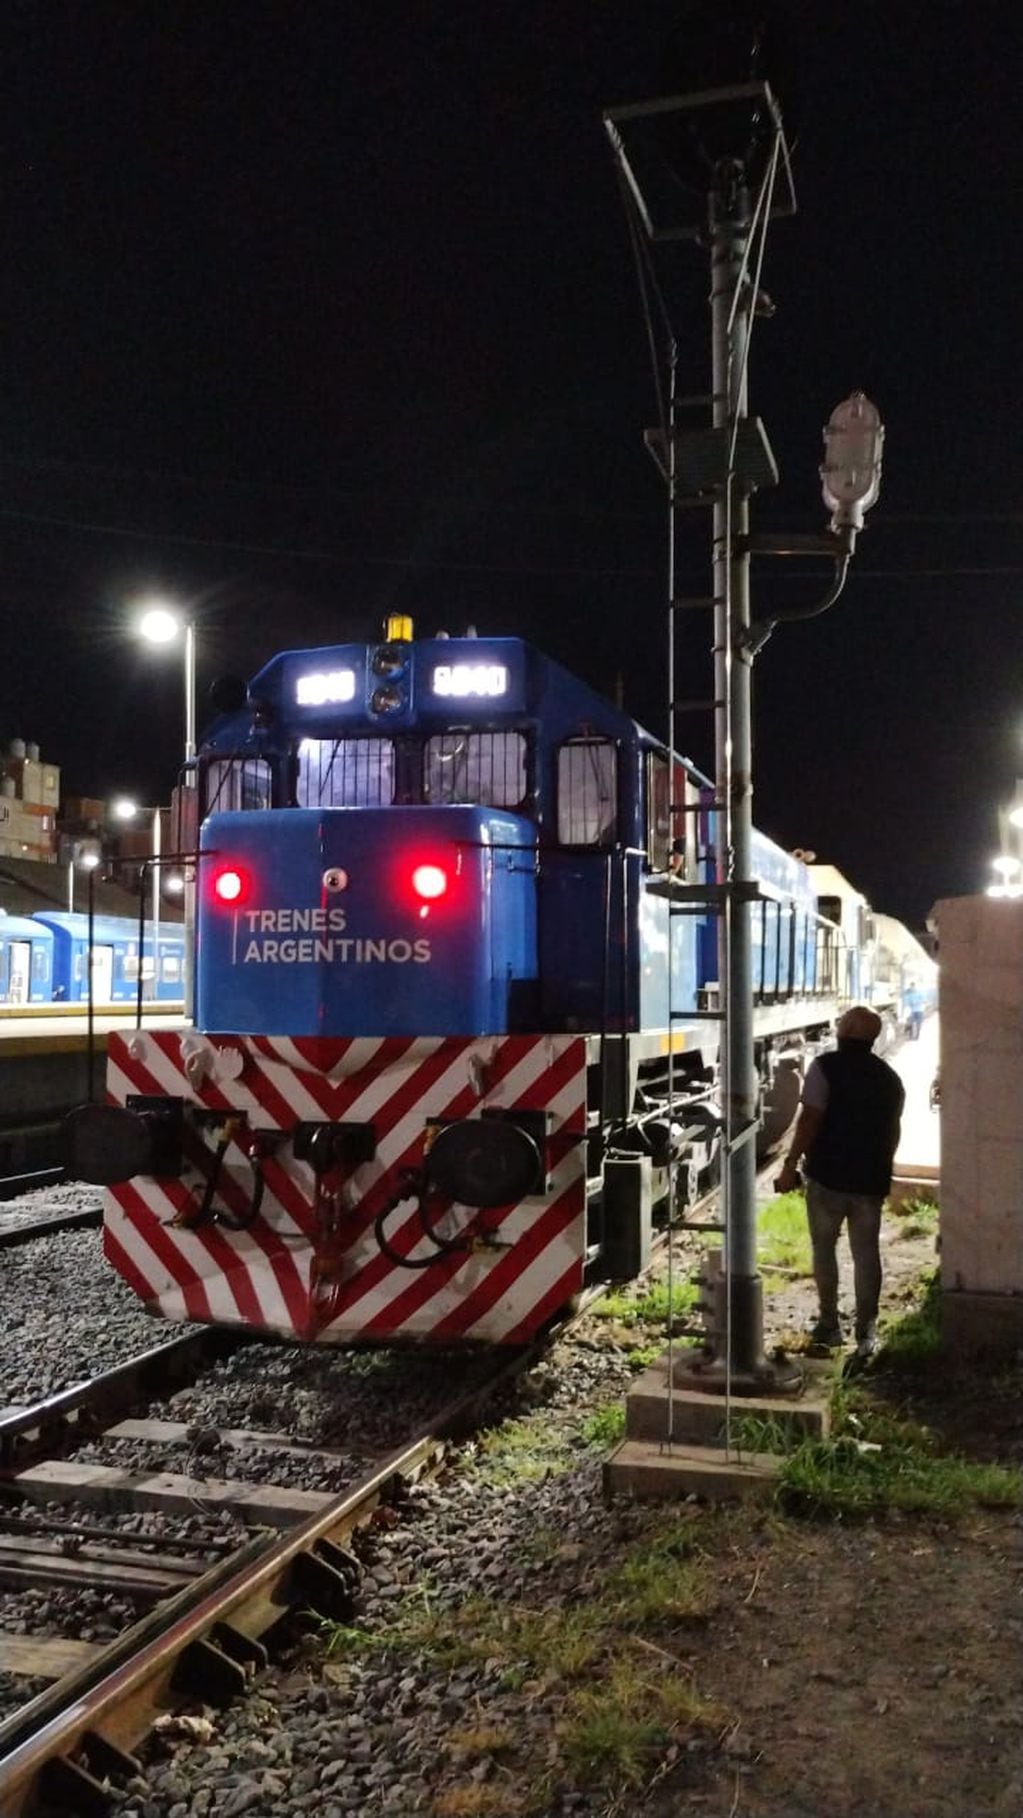 Fotos y videos del tren de pasajeros que llegará mañana a Mendoza por dentro: Así son los camarotes. Foto: Gentileza Gustavo Summo